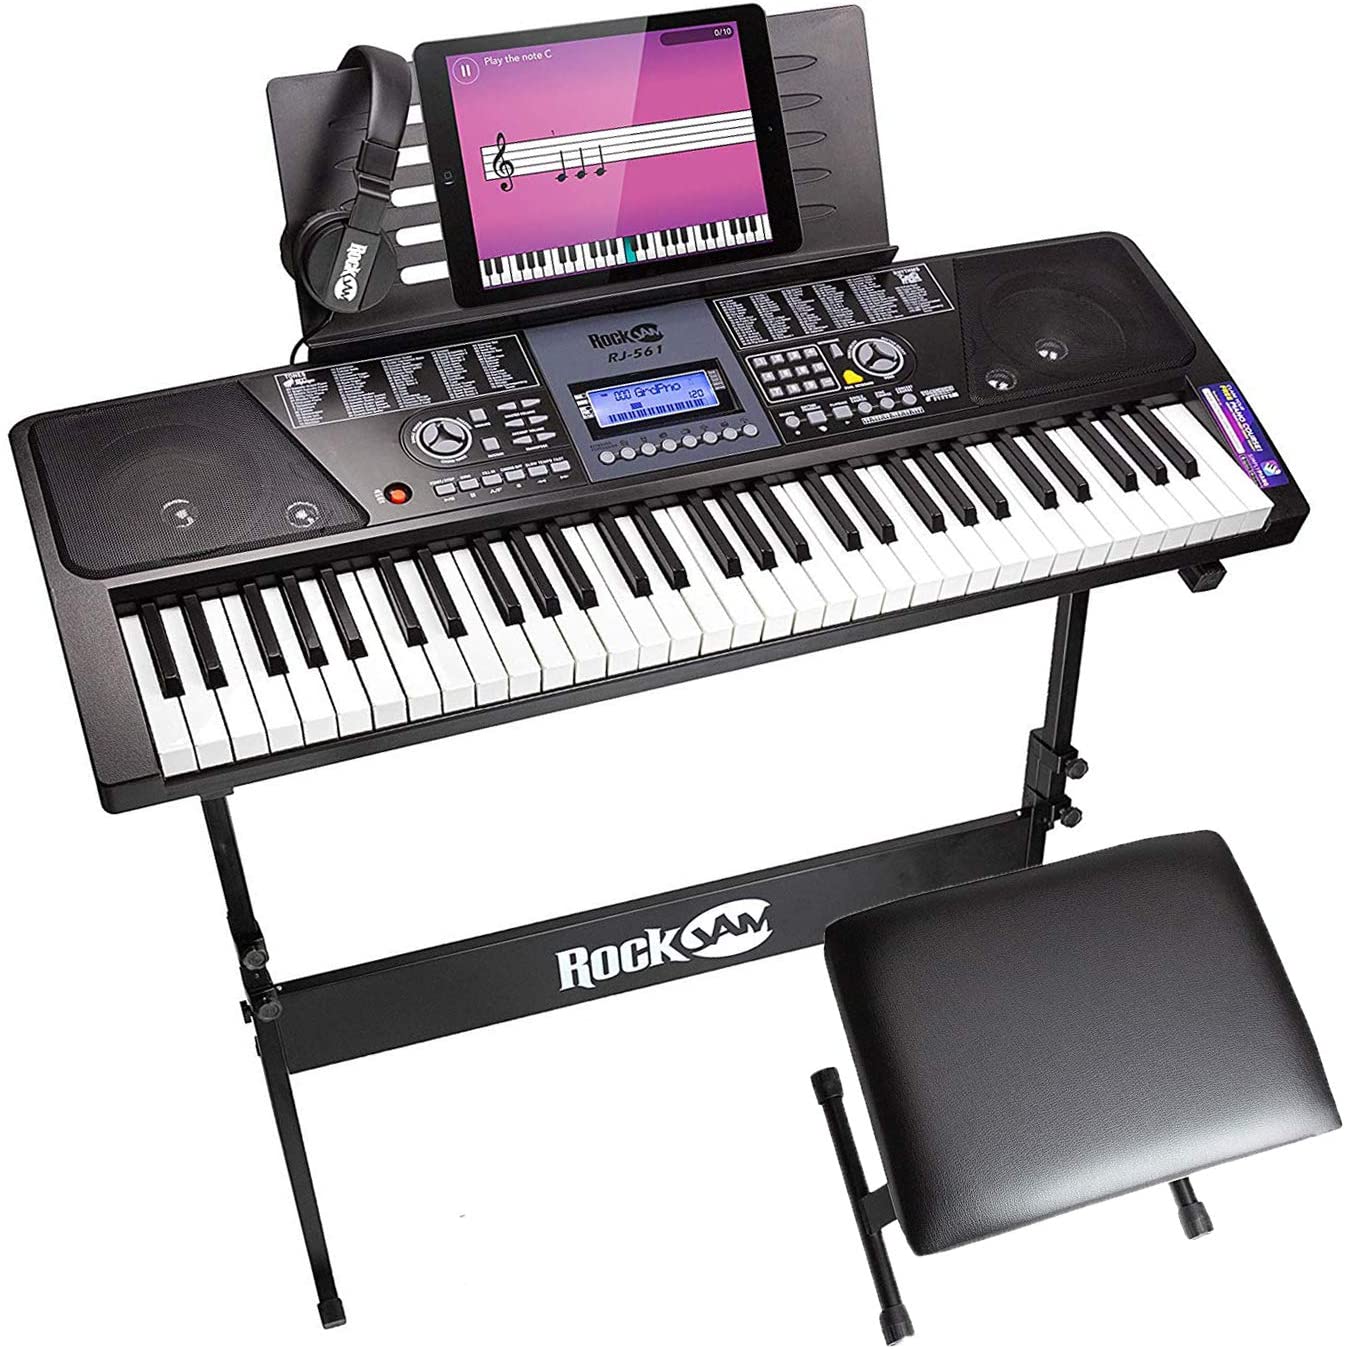 RockJam 61-Key Electronic Keyboard